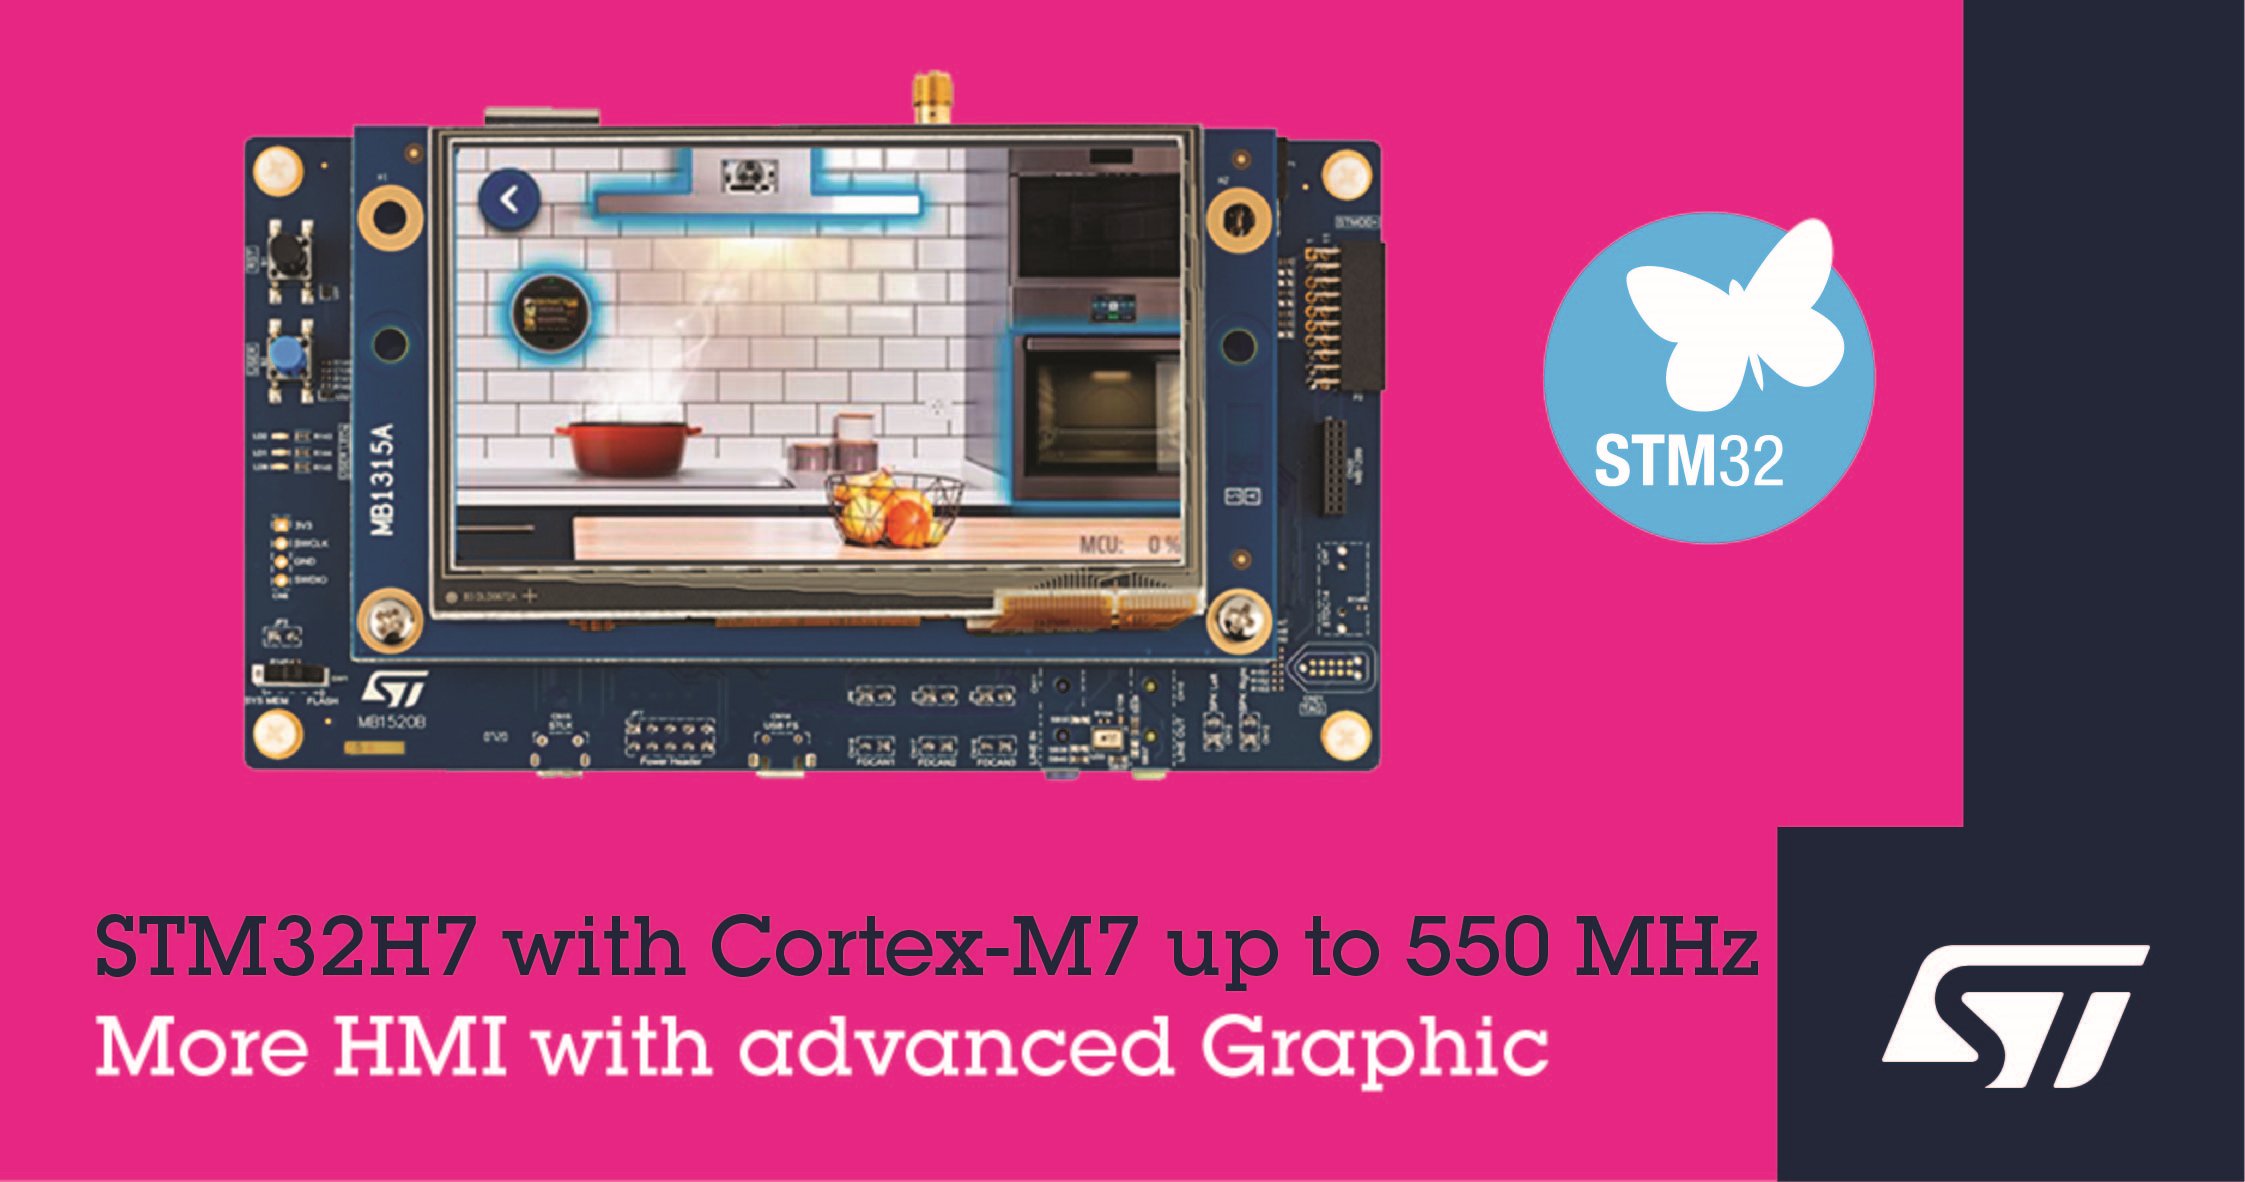 意法半导体推出新升级的更快的STM32H7微控制器 提高智能互联产品的性能和经济性